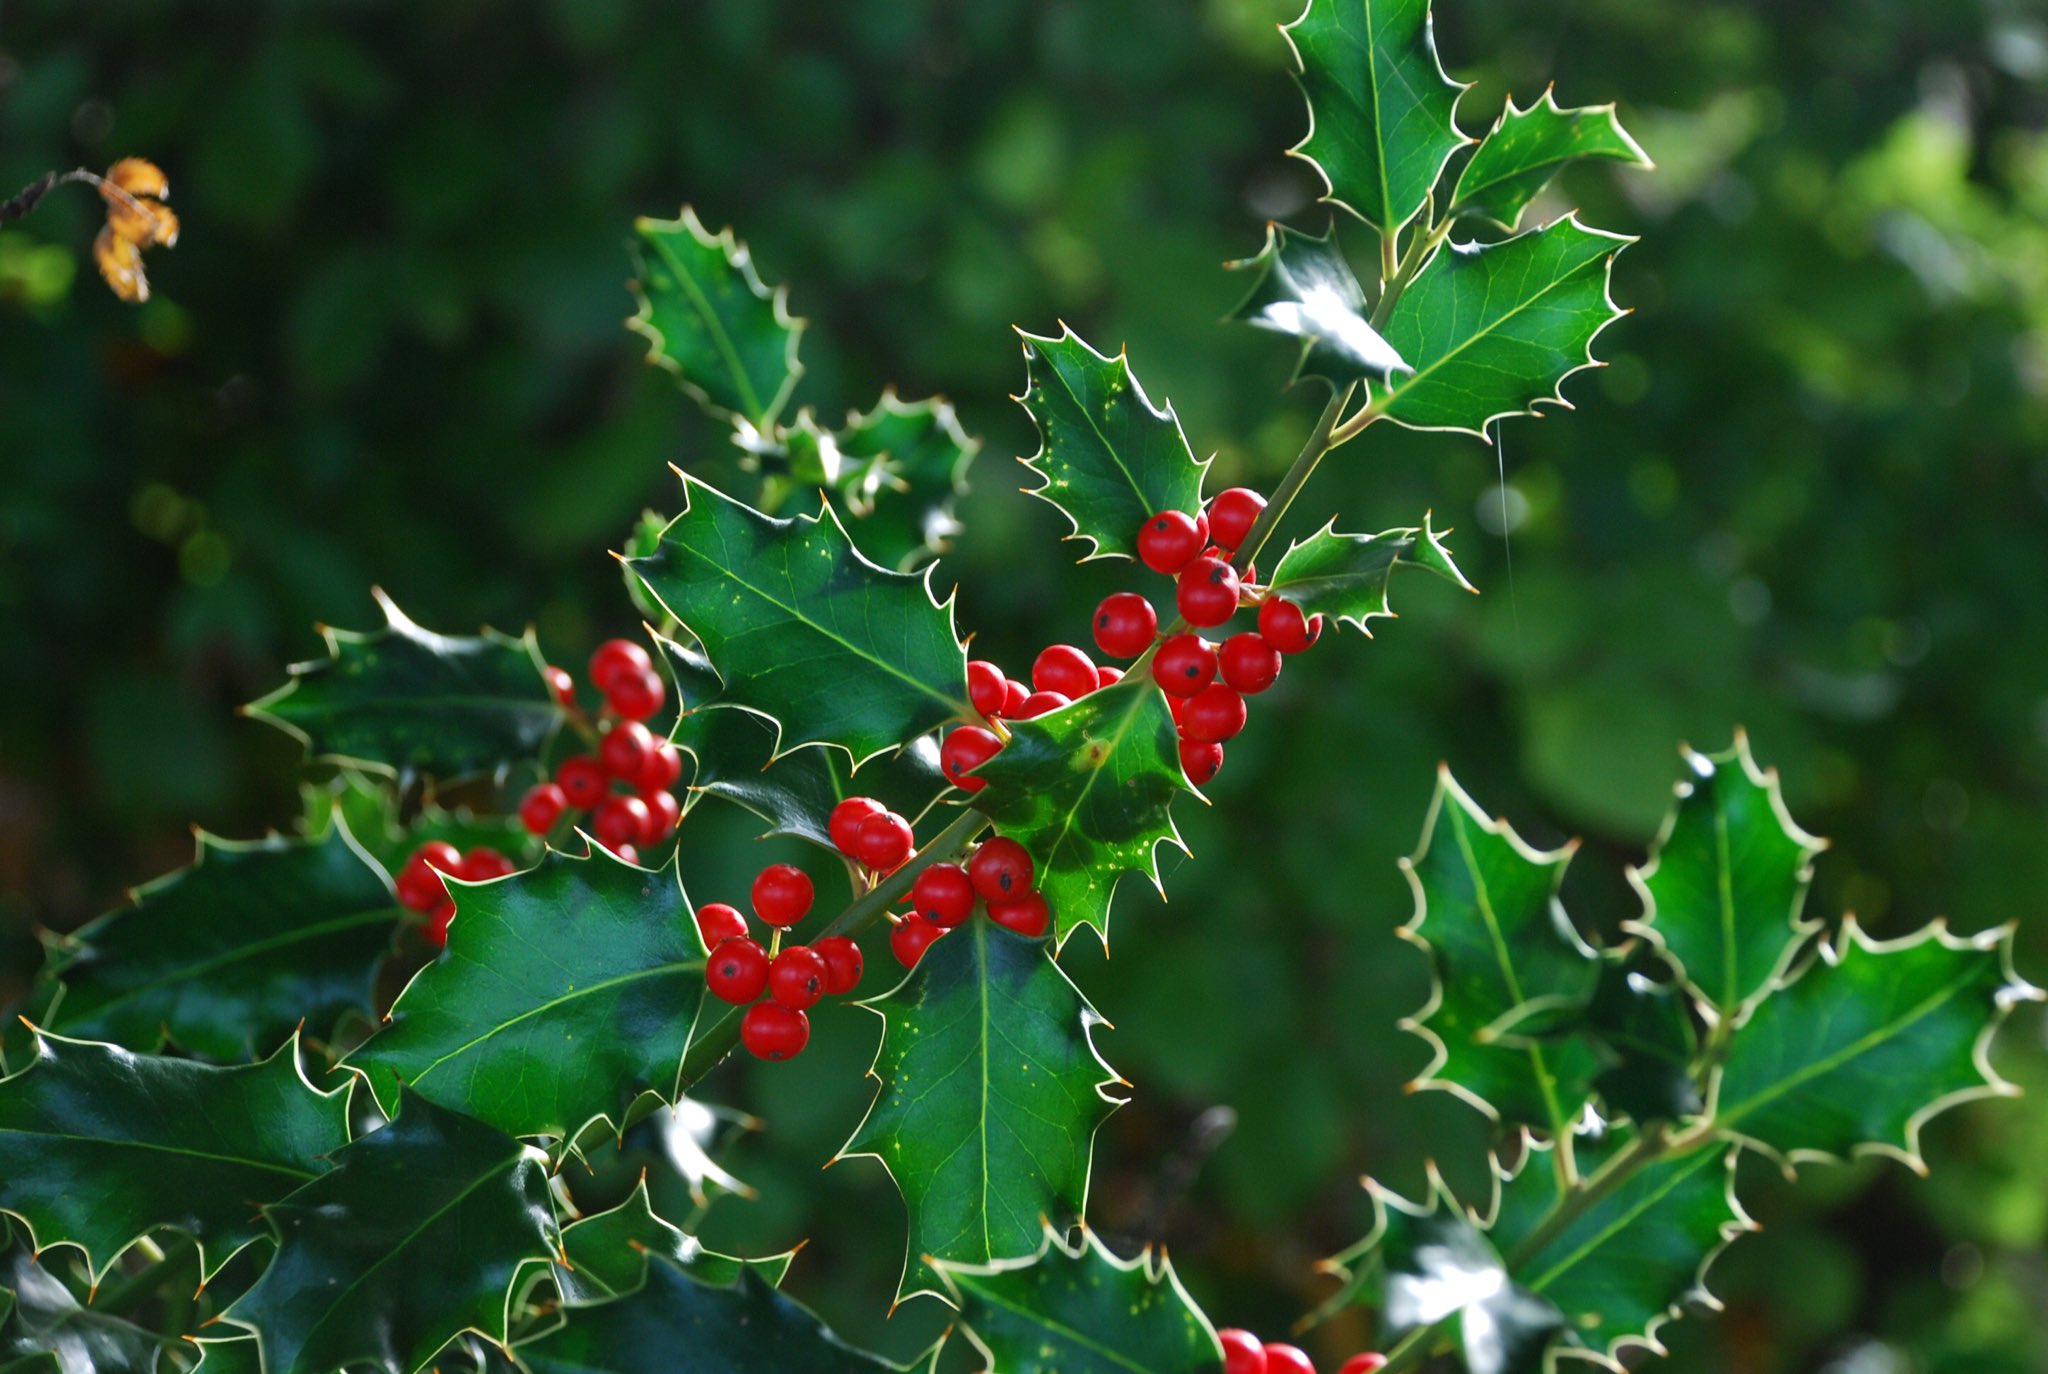 草木のこと Na Twitteru Llex Aquifolium セイヨウヒイラギ クリスマス 飾りに用いられることから これからのシーズンよく目にするのだけれど 赤い実はキリストの血を尖った葉は苦悩を 白い花は生誕を意味する またキリスト教以前より聖木として 悪魔や魔法使いの